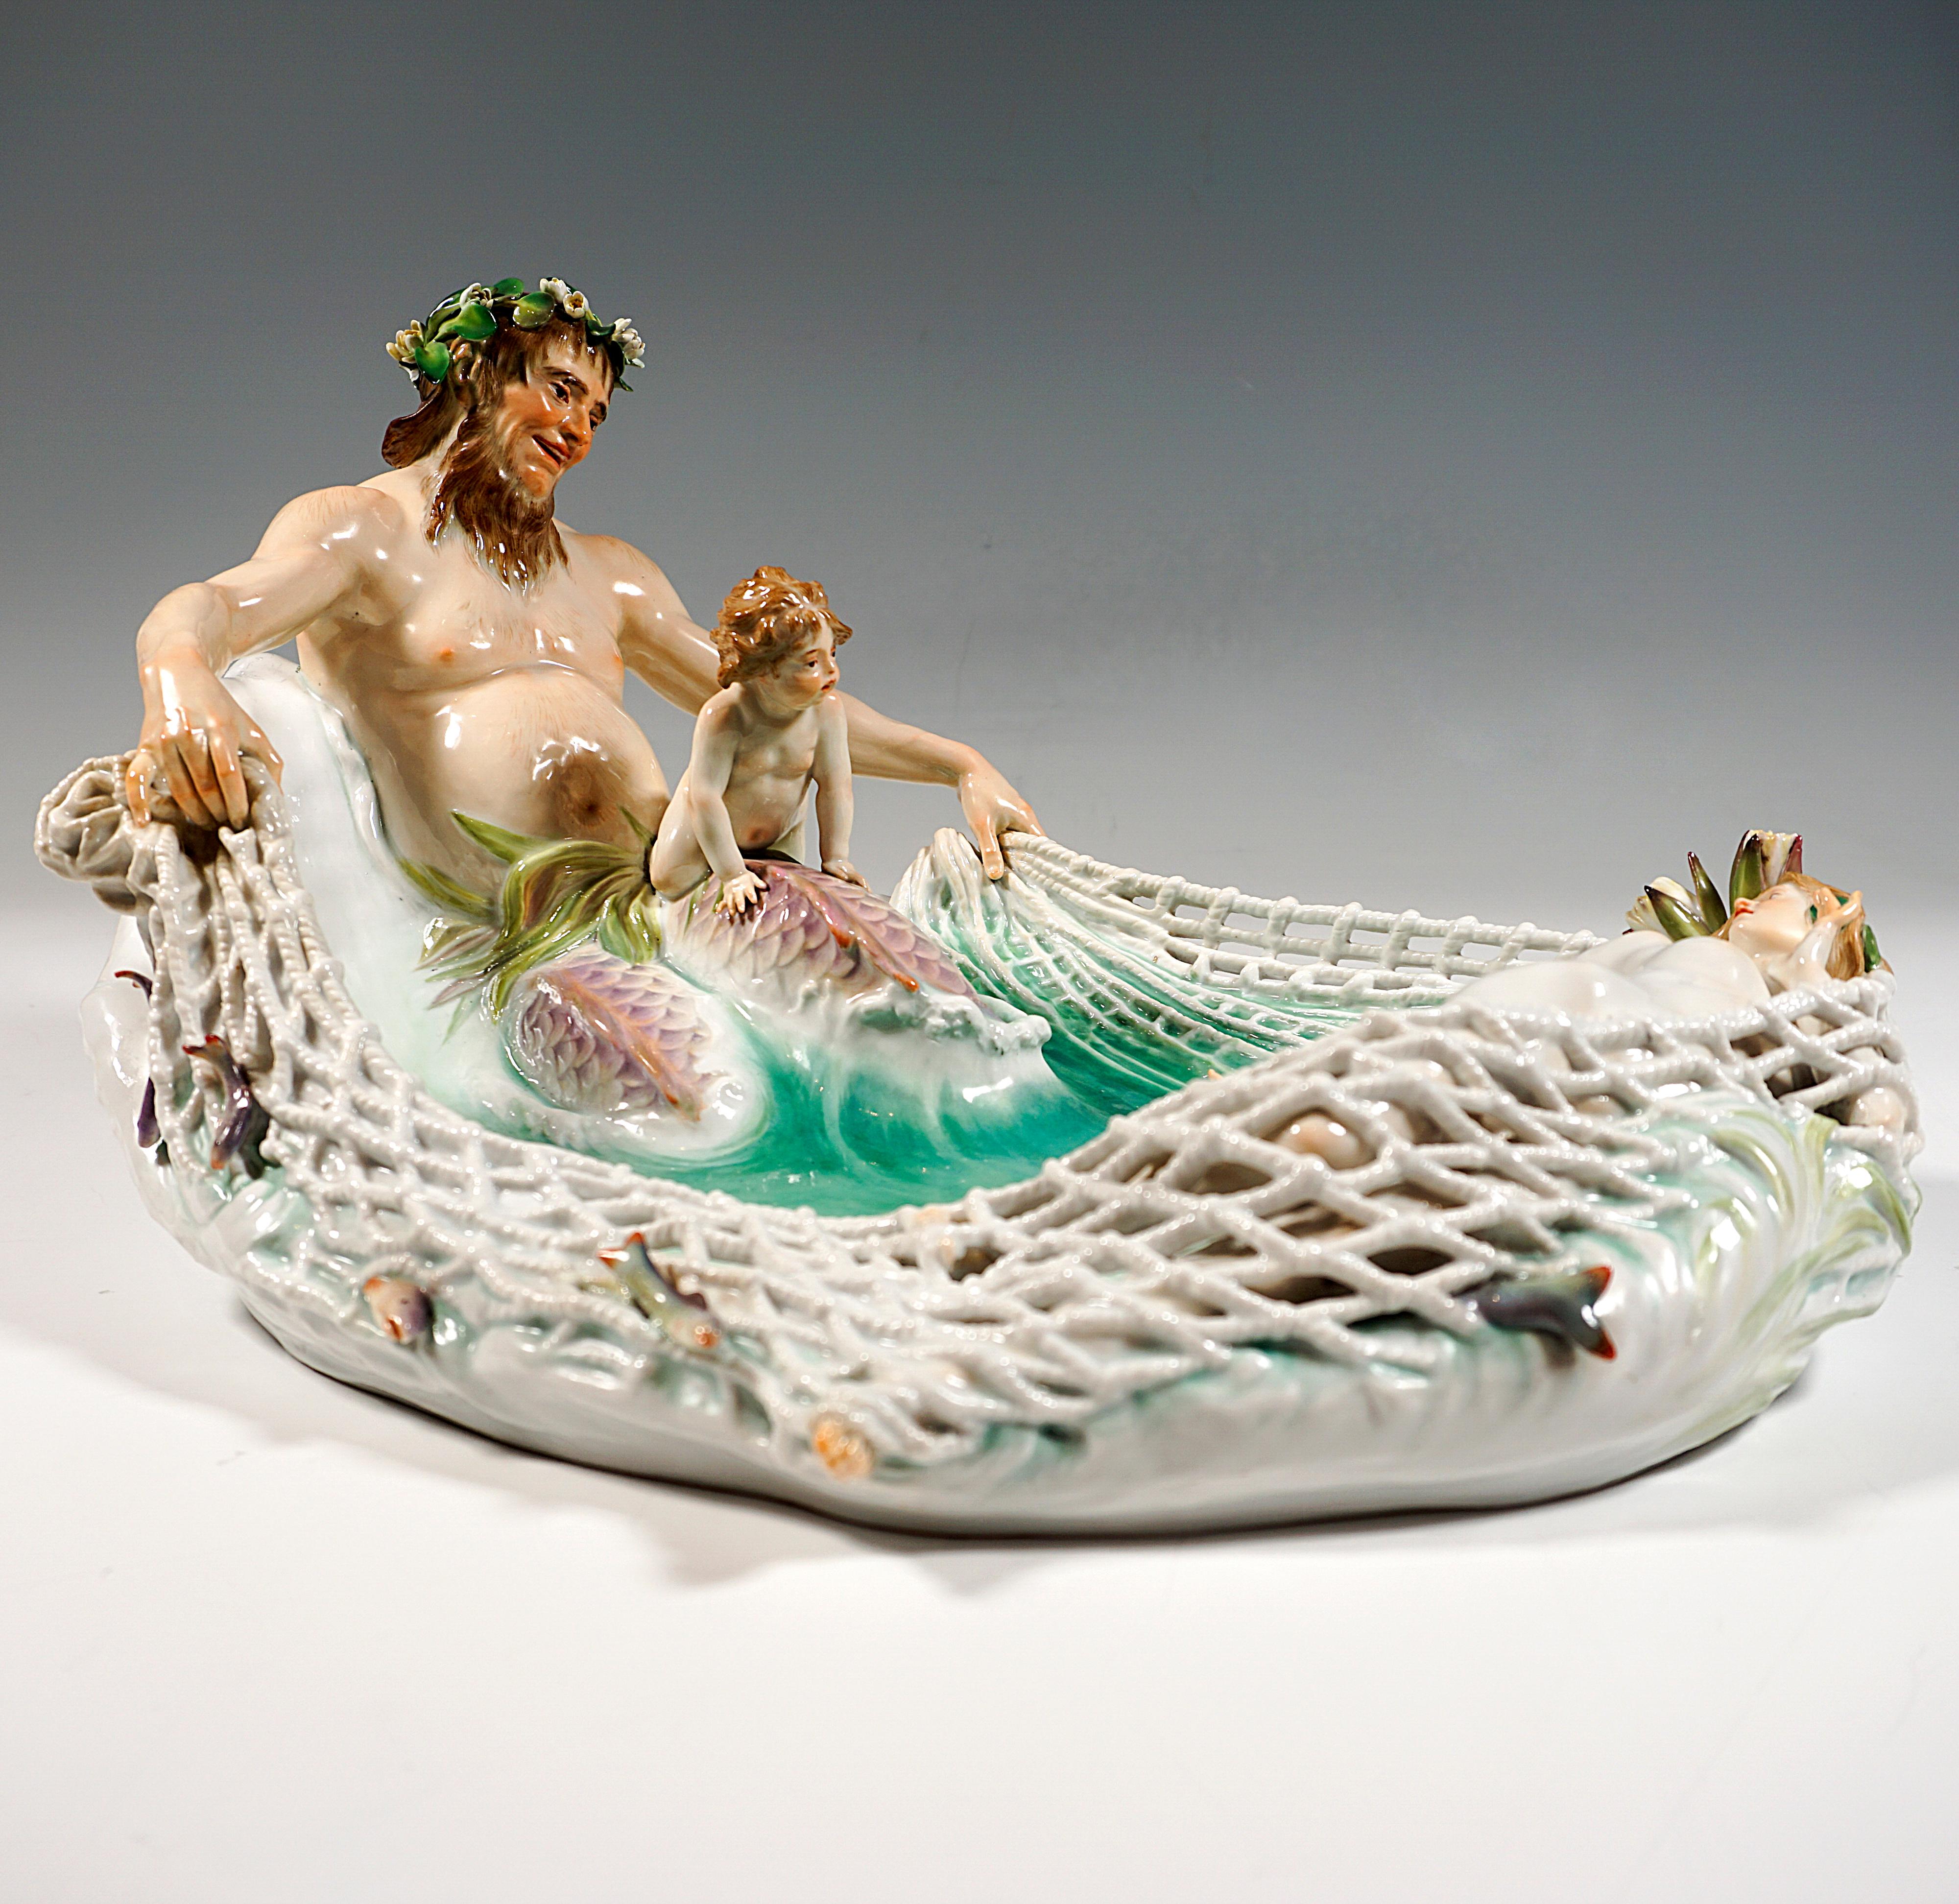 Exquis grand et rare groupe en porcelaine de Meissen Art Nouveau :
Triton orné d'une couronne de nénuphars sur la tête, mi-homme, mi-poisson aux jambes écaillées, appuyé sur une vague haute et les bras tendus tirant à lui le filet de pêche et se